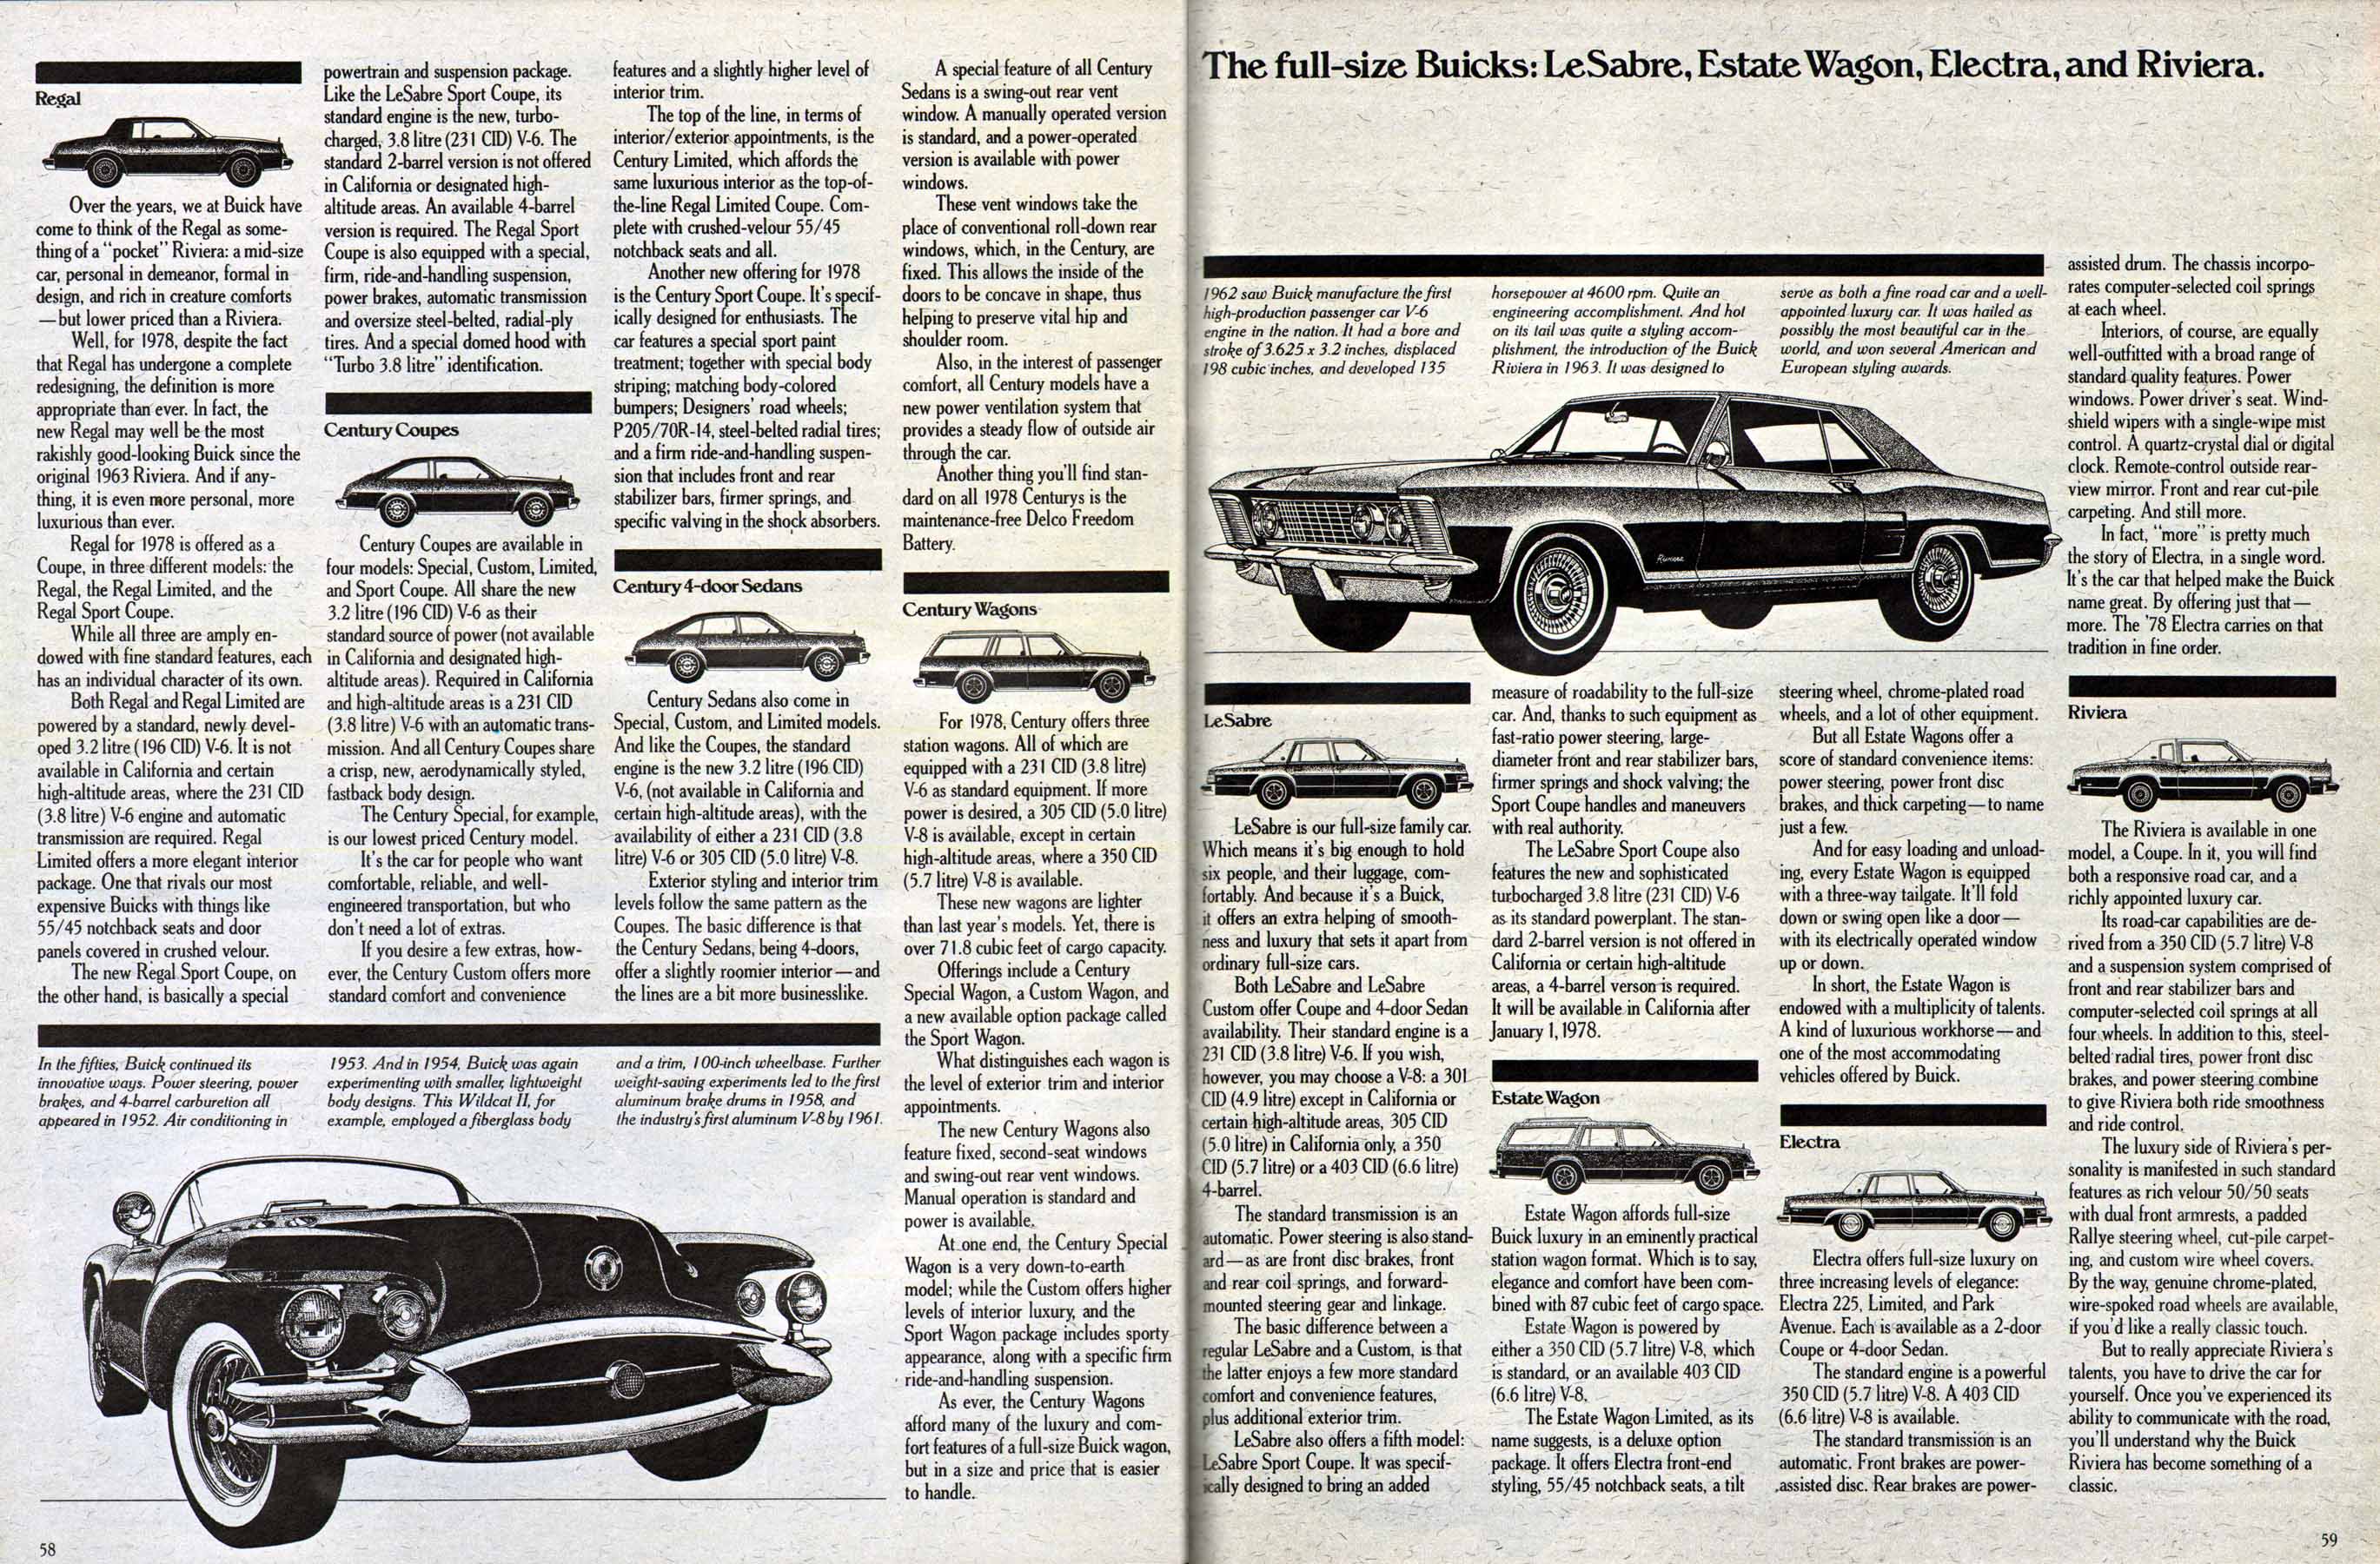 1978 Buick Full Line Prestige-58-59